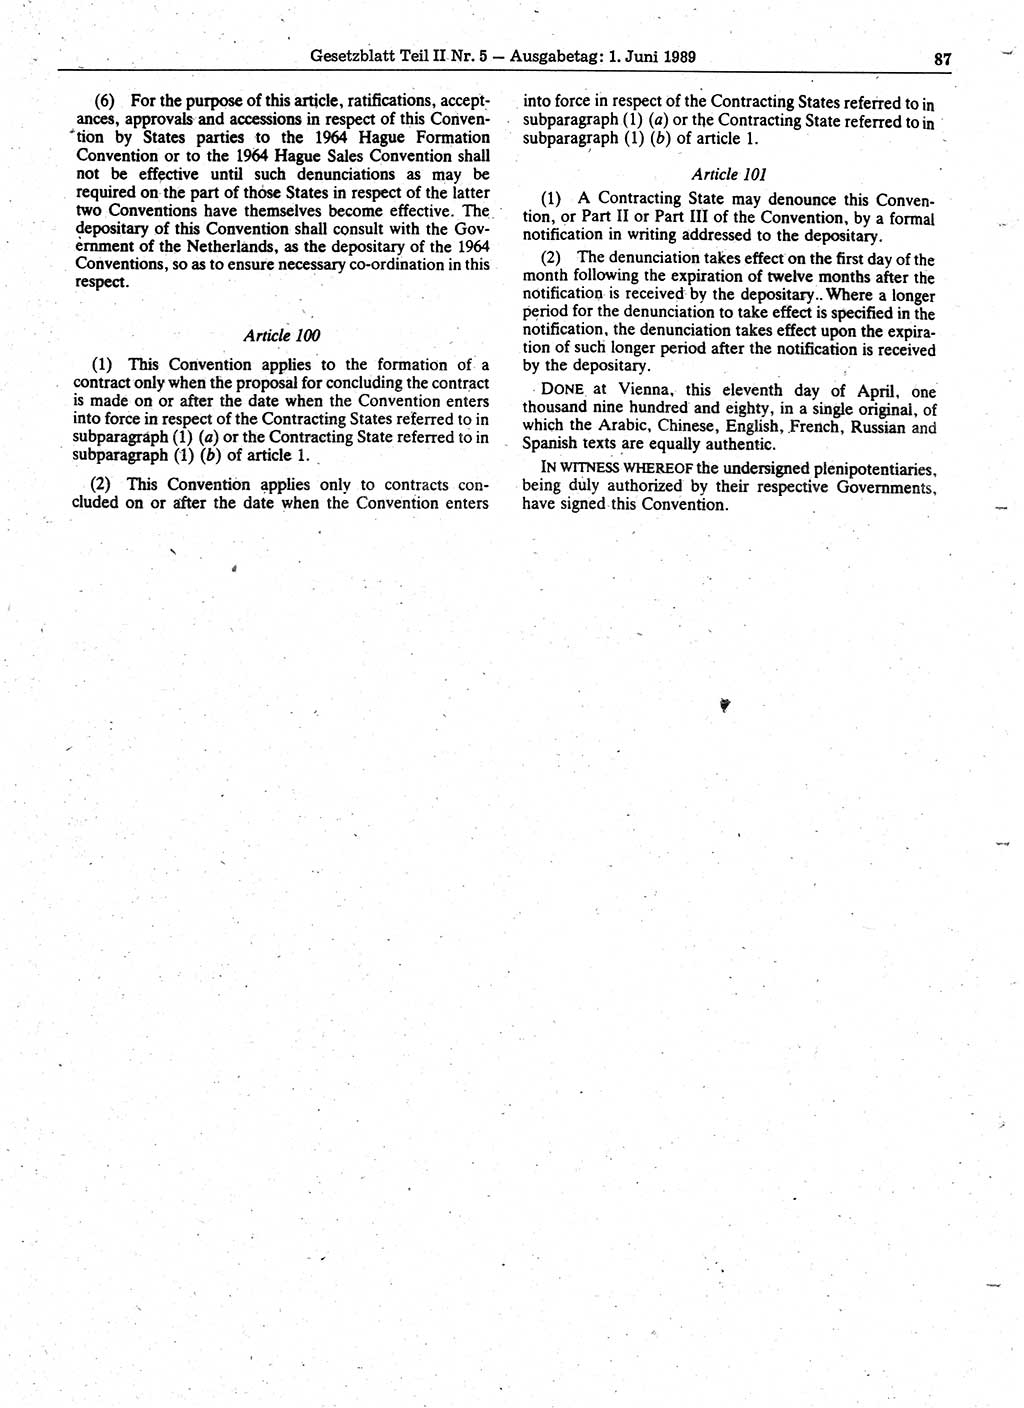 Gesetzblatt (GBl.) der Deutschen Demokratischen Republik (DDR) Teil ⅠⅠ 1989, Seite 87 (GBl. DDR ⅠⅠ 1989, S. 87)